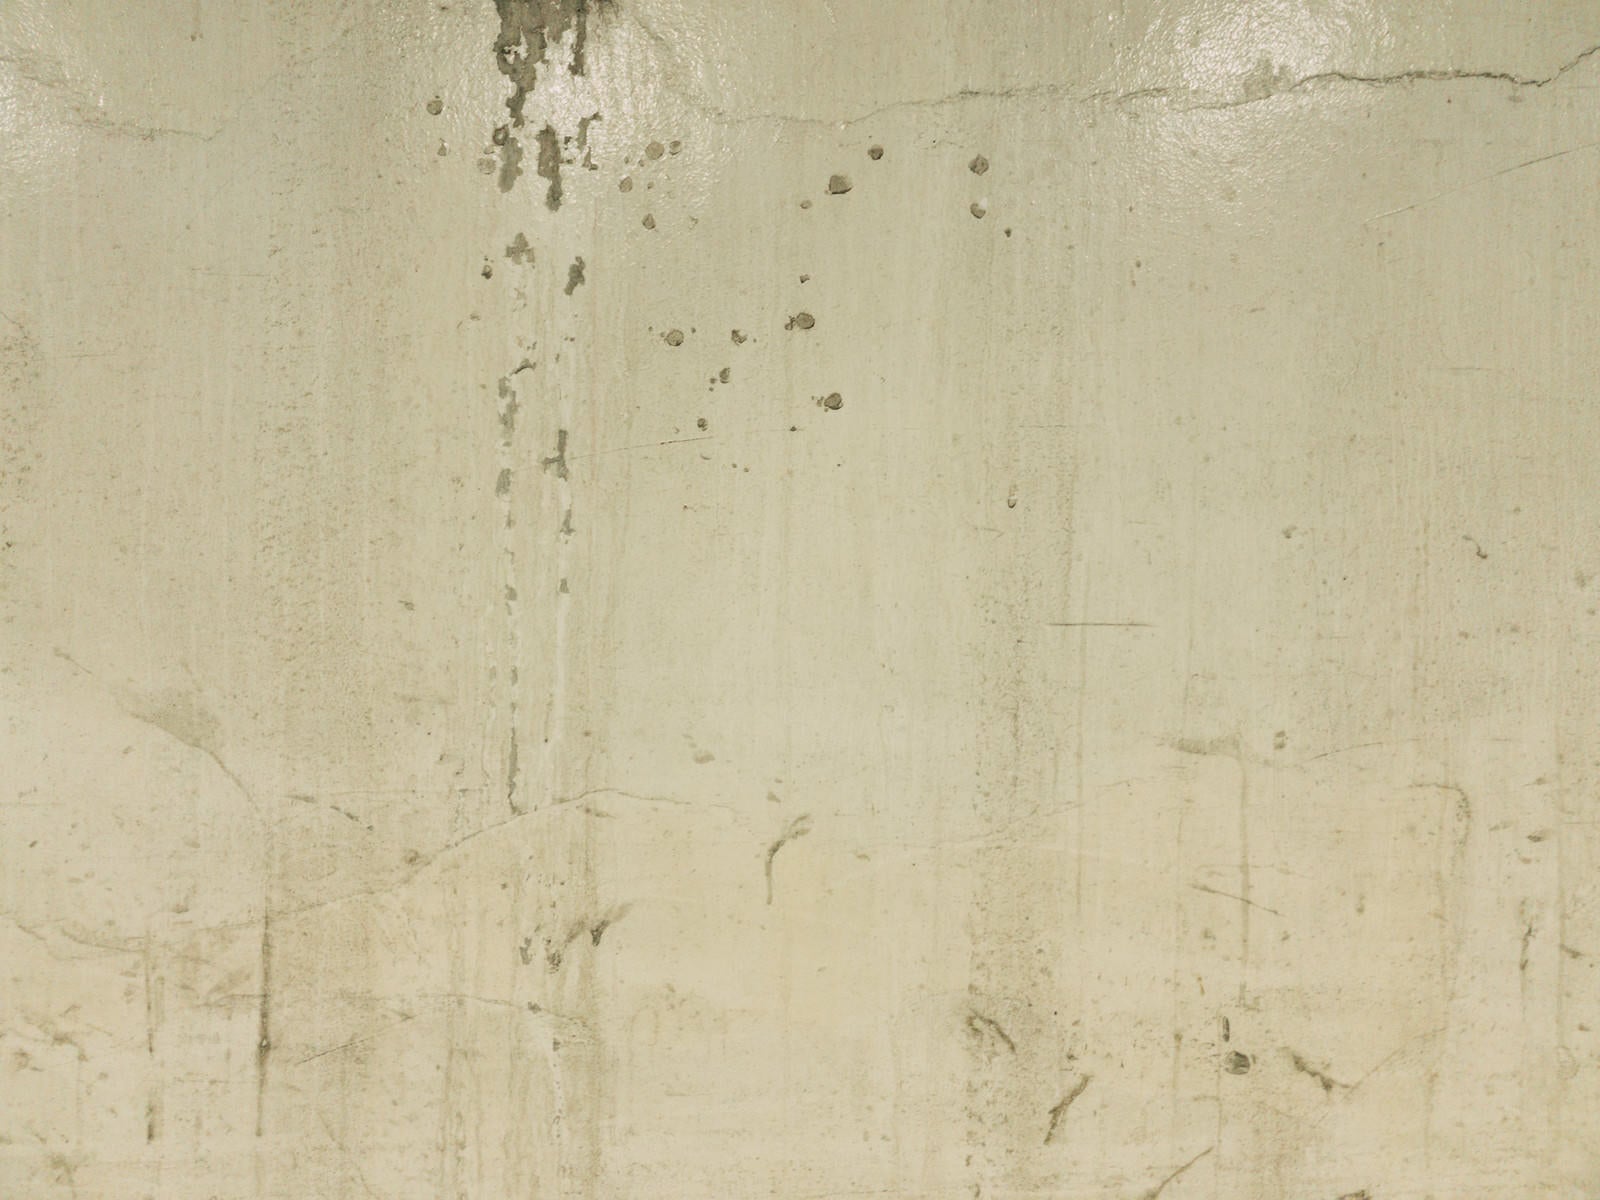 「塗装した壁に残る汚れのテクスチャー」の写真